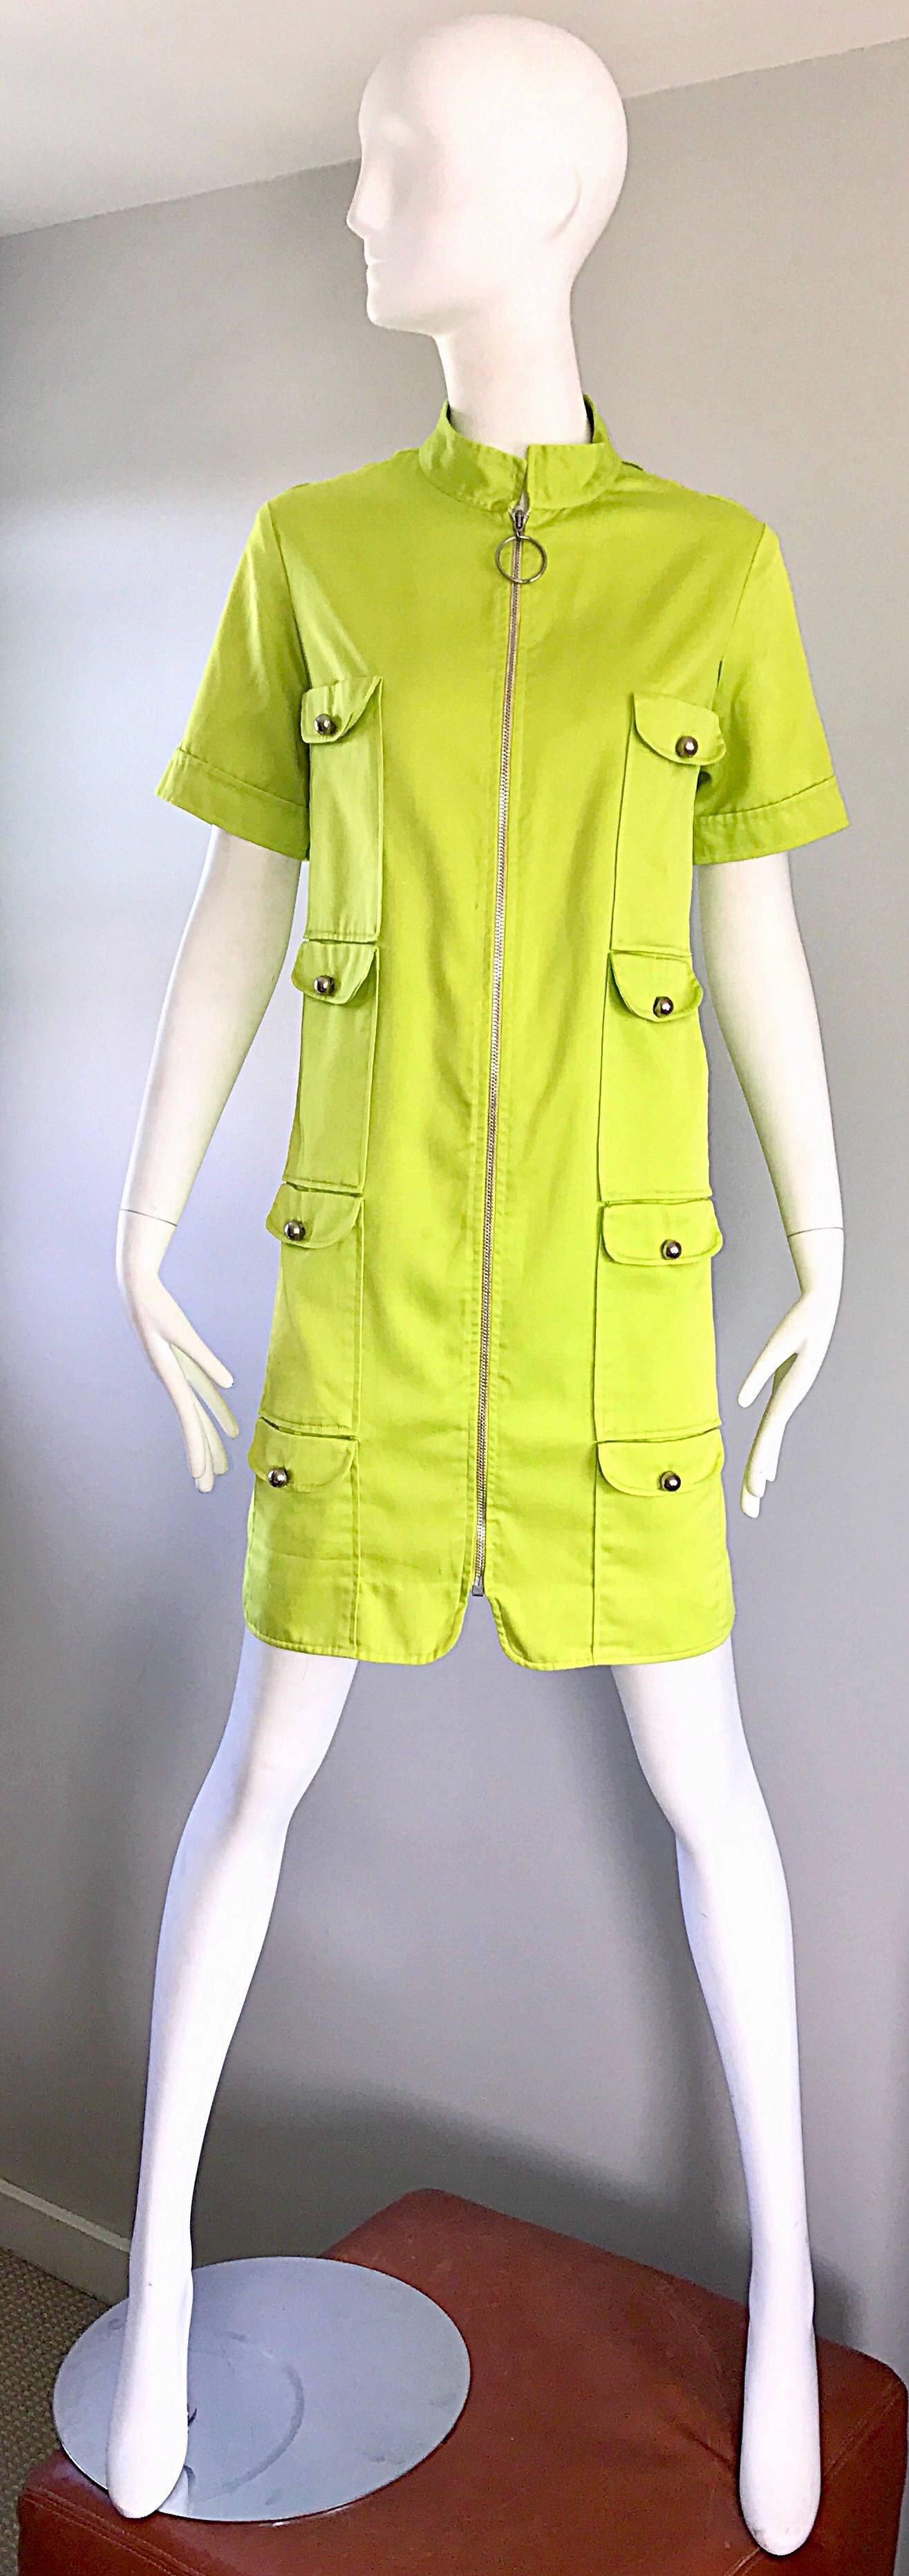 Chic 1960s I MAGNIN Mod Lime Green Zipper Vintage 60s Cargo Pocket Shift Dress For Sale 2